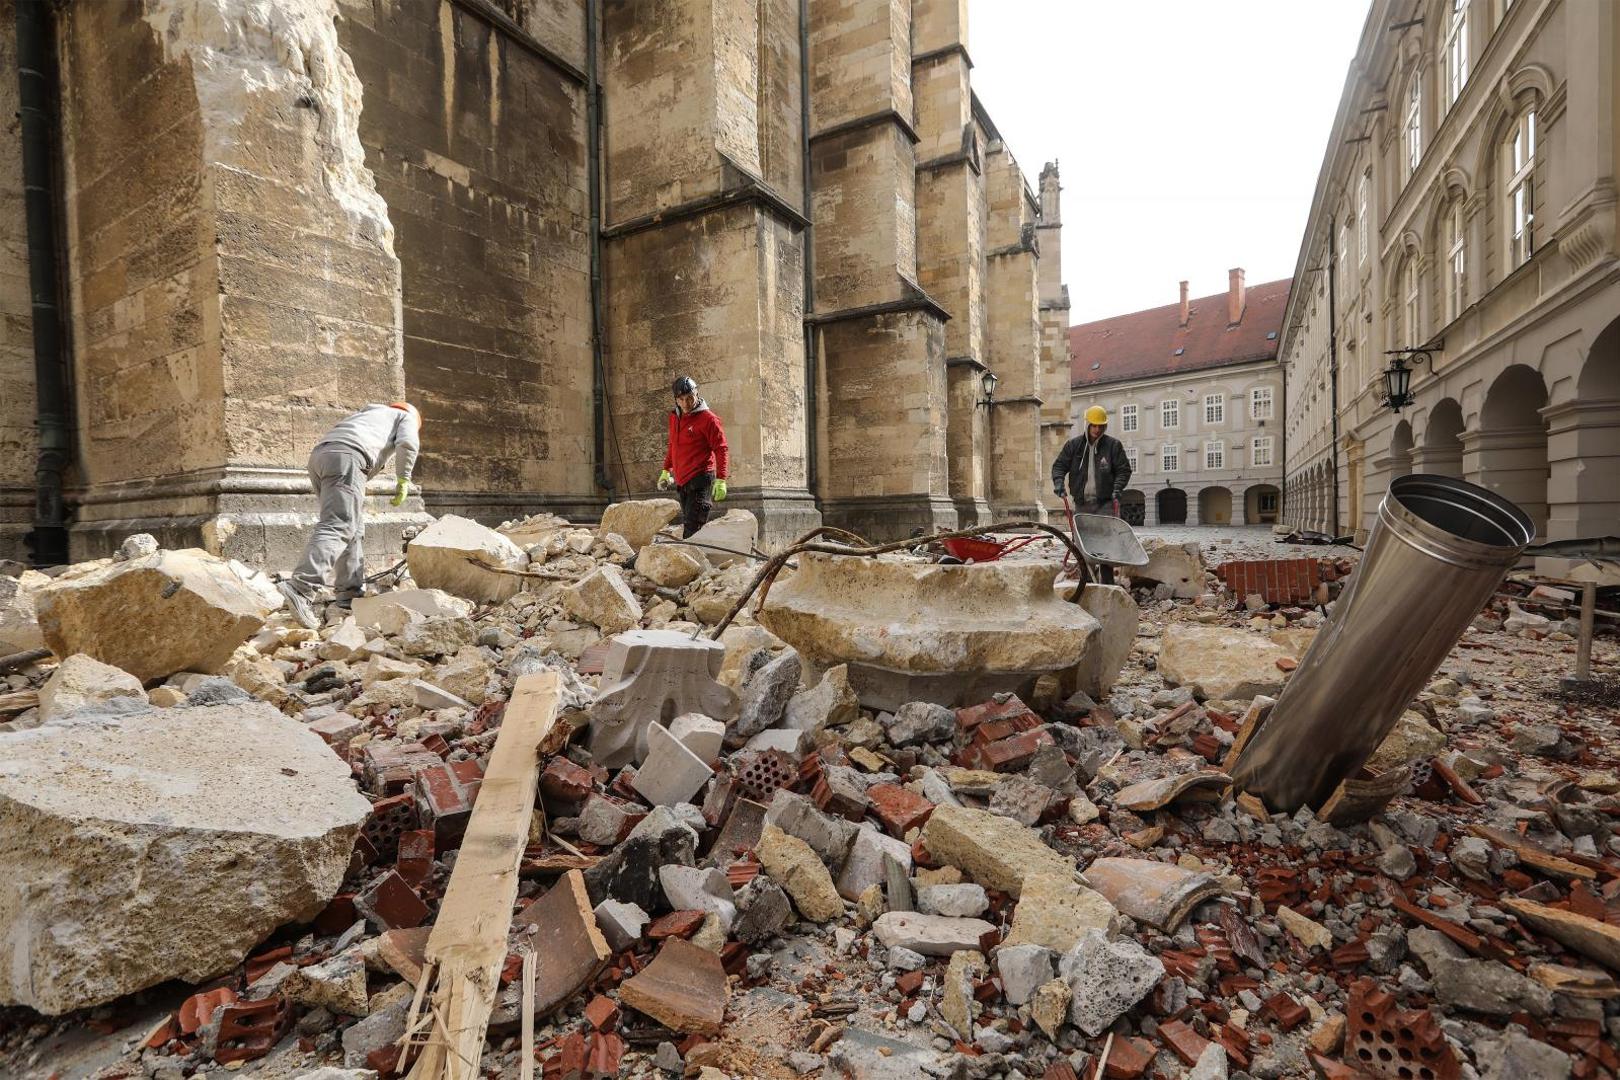 Zagrebačka prvostolnica oštećena je u potresu koji je pogodio glavni grad Hrvatske u nedjelju 22. ožujka.